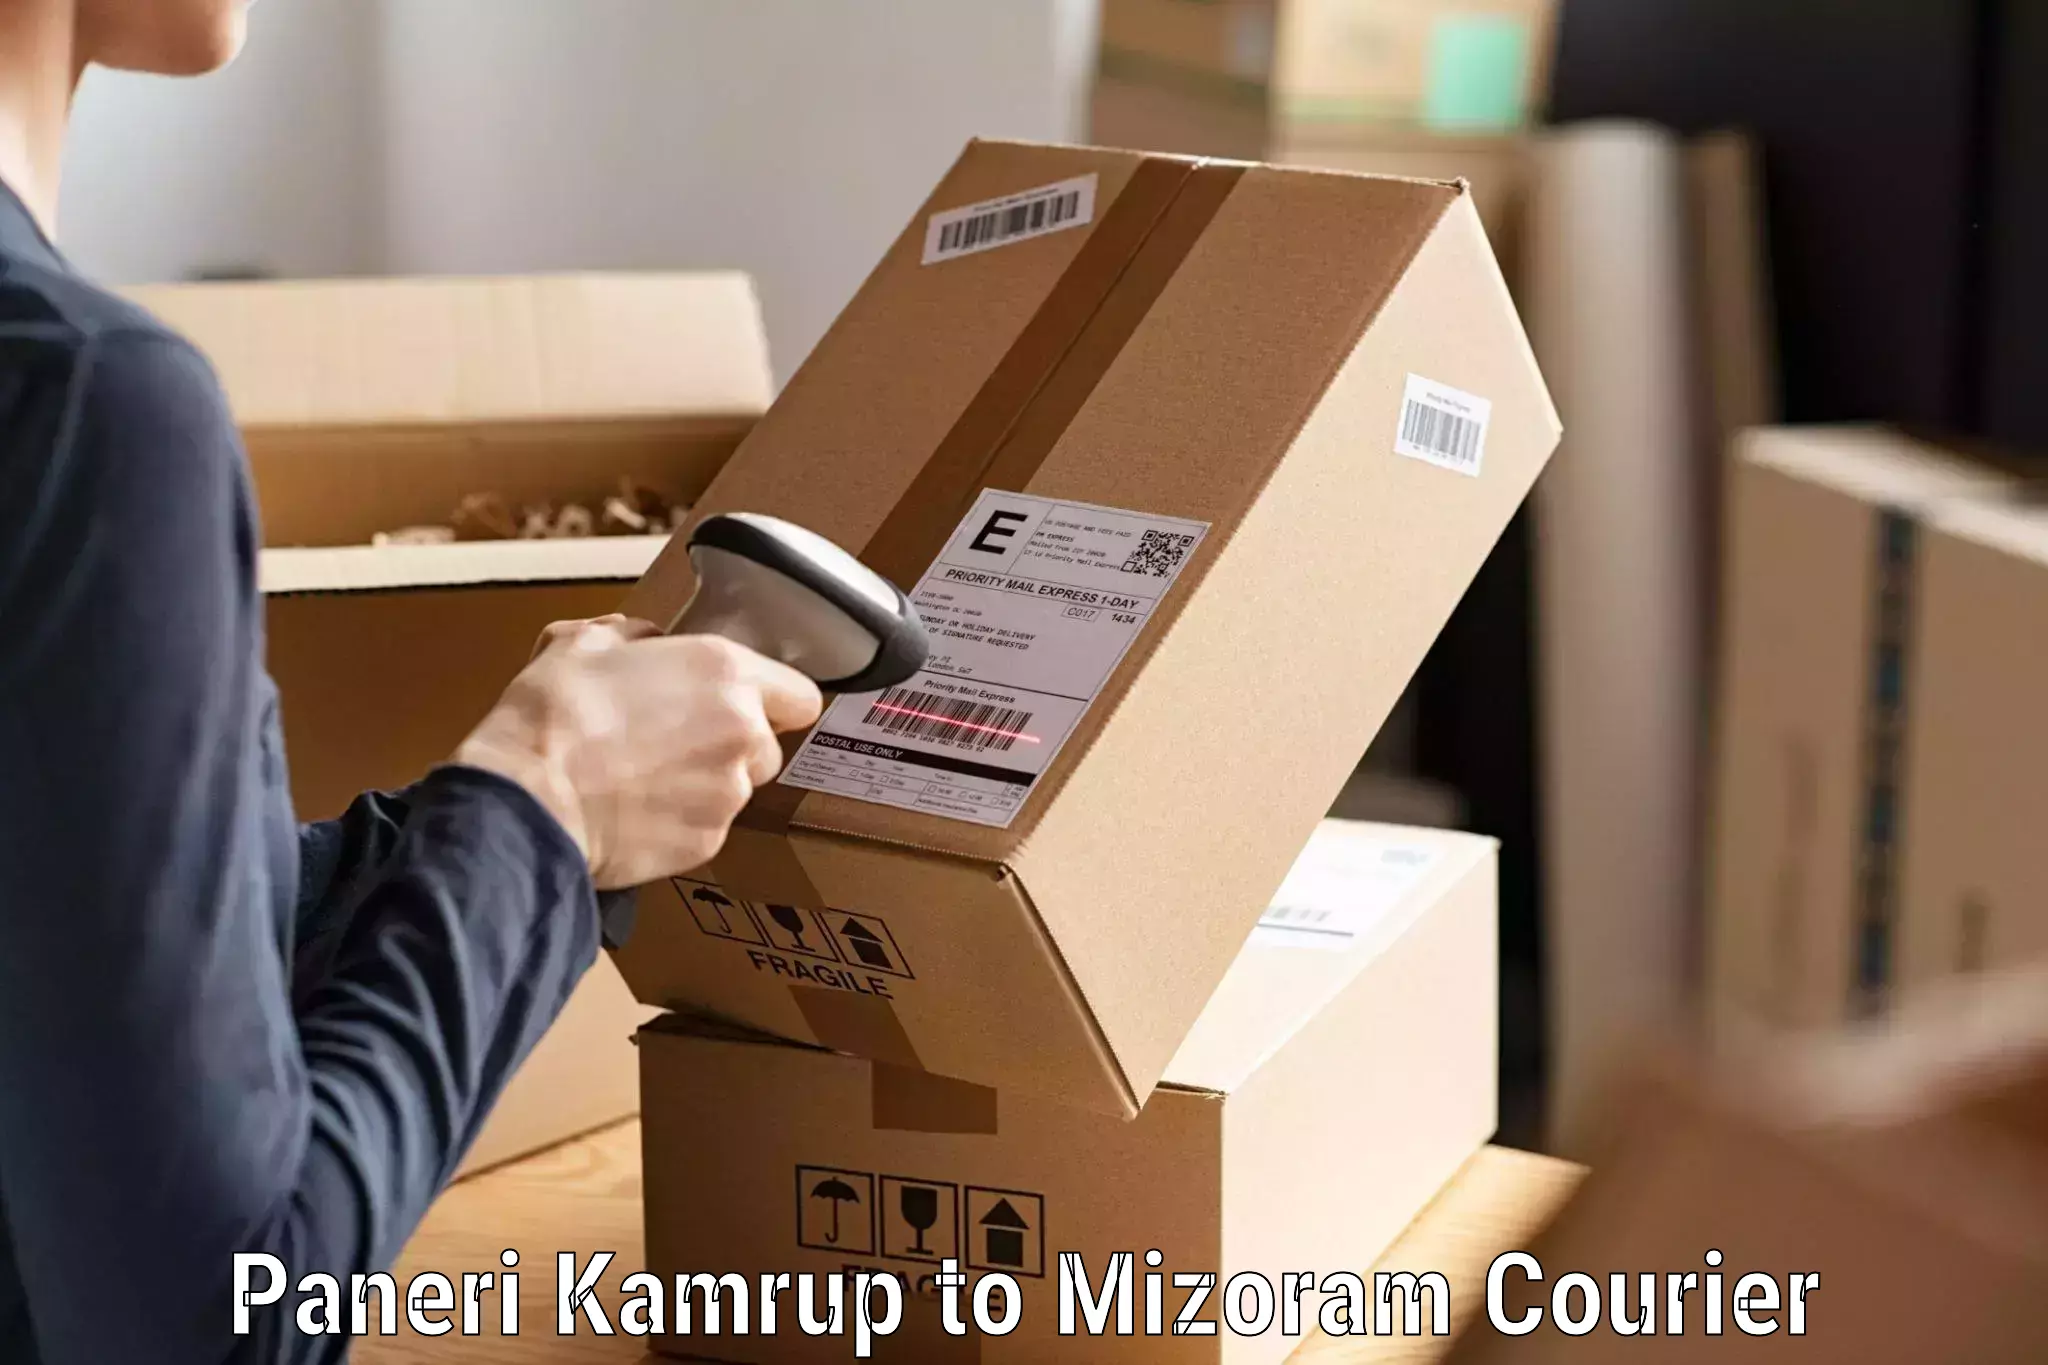 Professional courier handling Paneri Kamrup to Serchhip